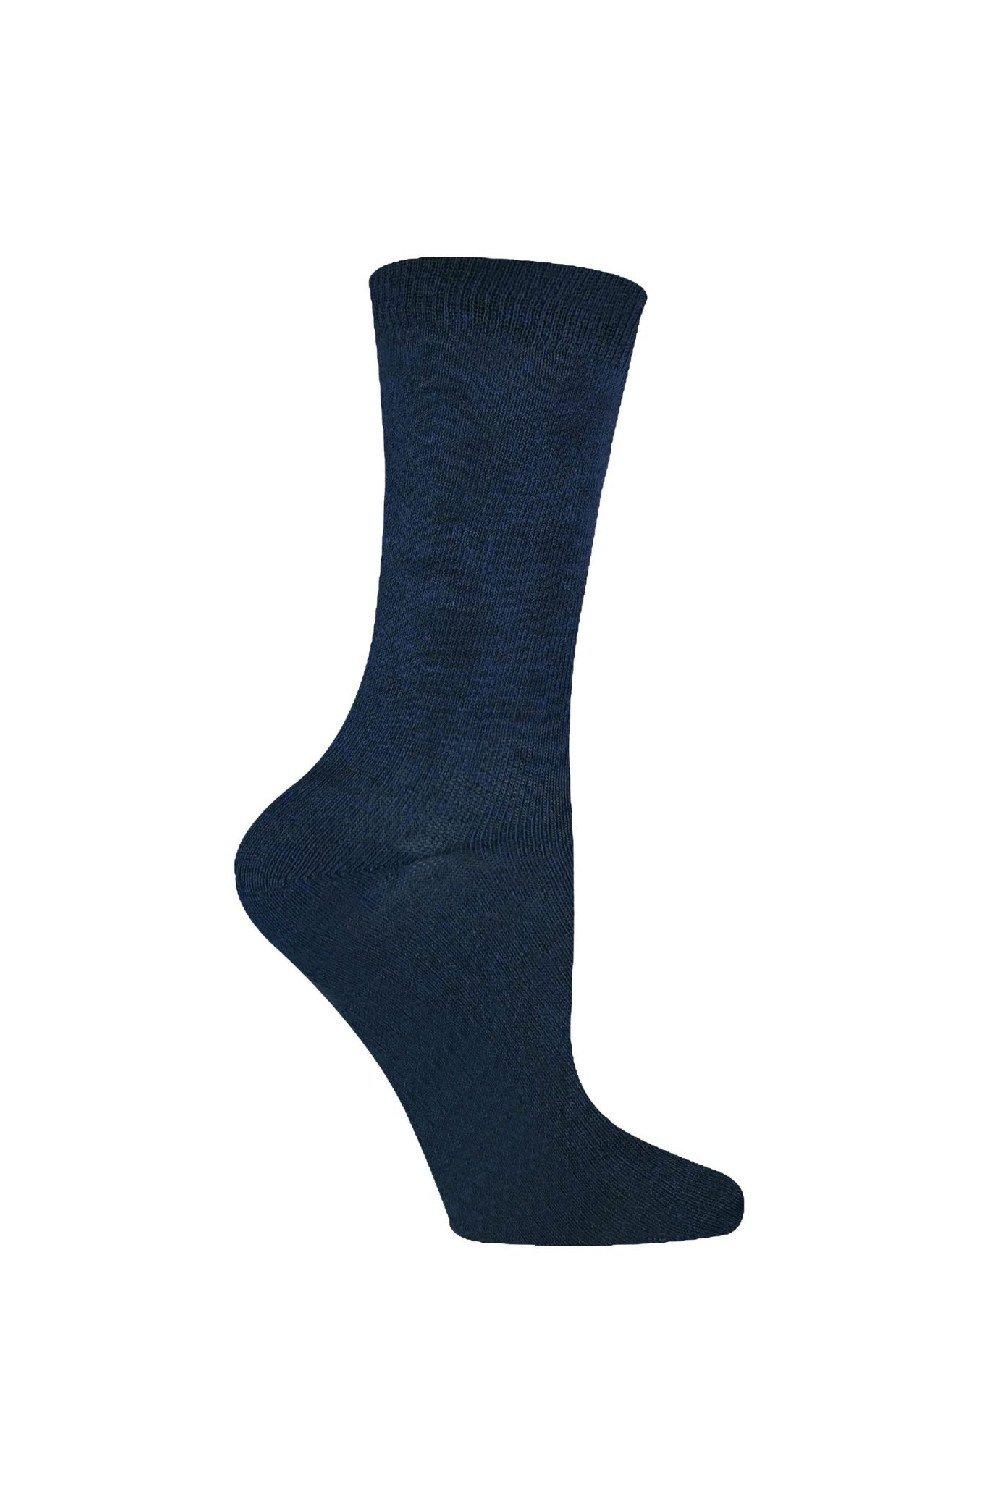 6 пар повседневных школьных носков из мягкого дышащего бамбука Sock Snob, синий